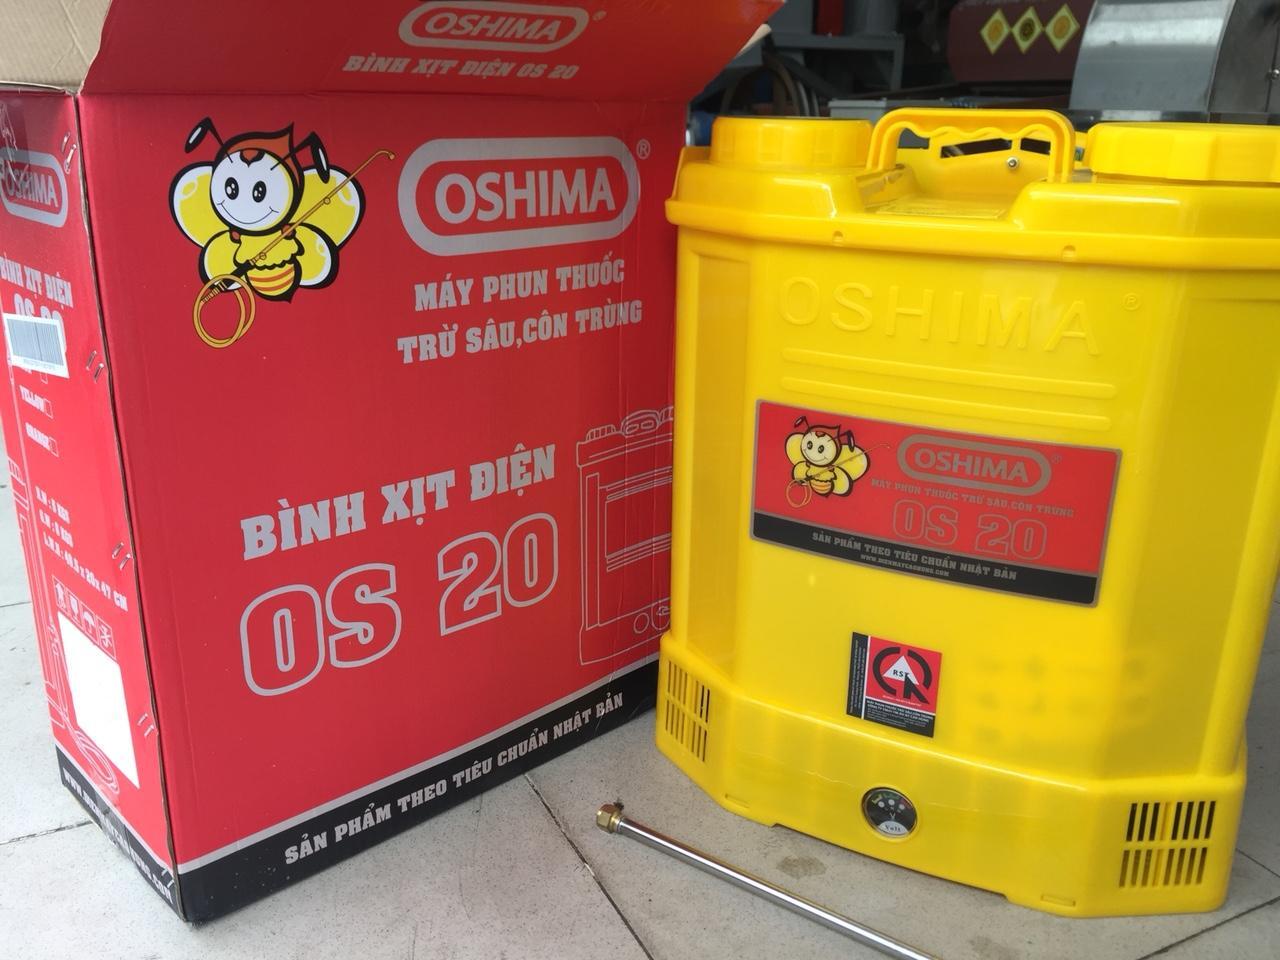 Máy phun thuốc bằng điện Oshima OS20